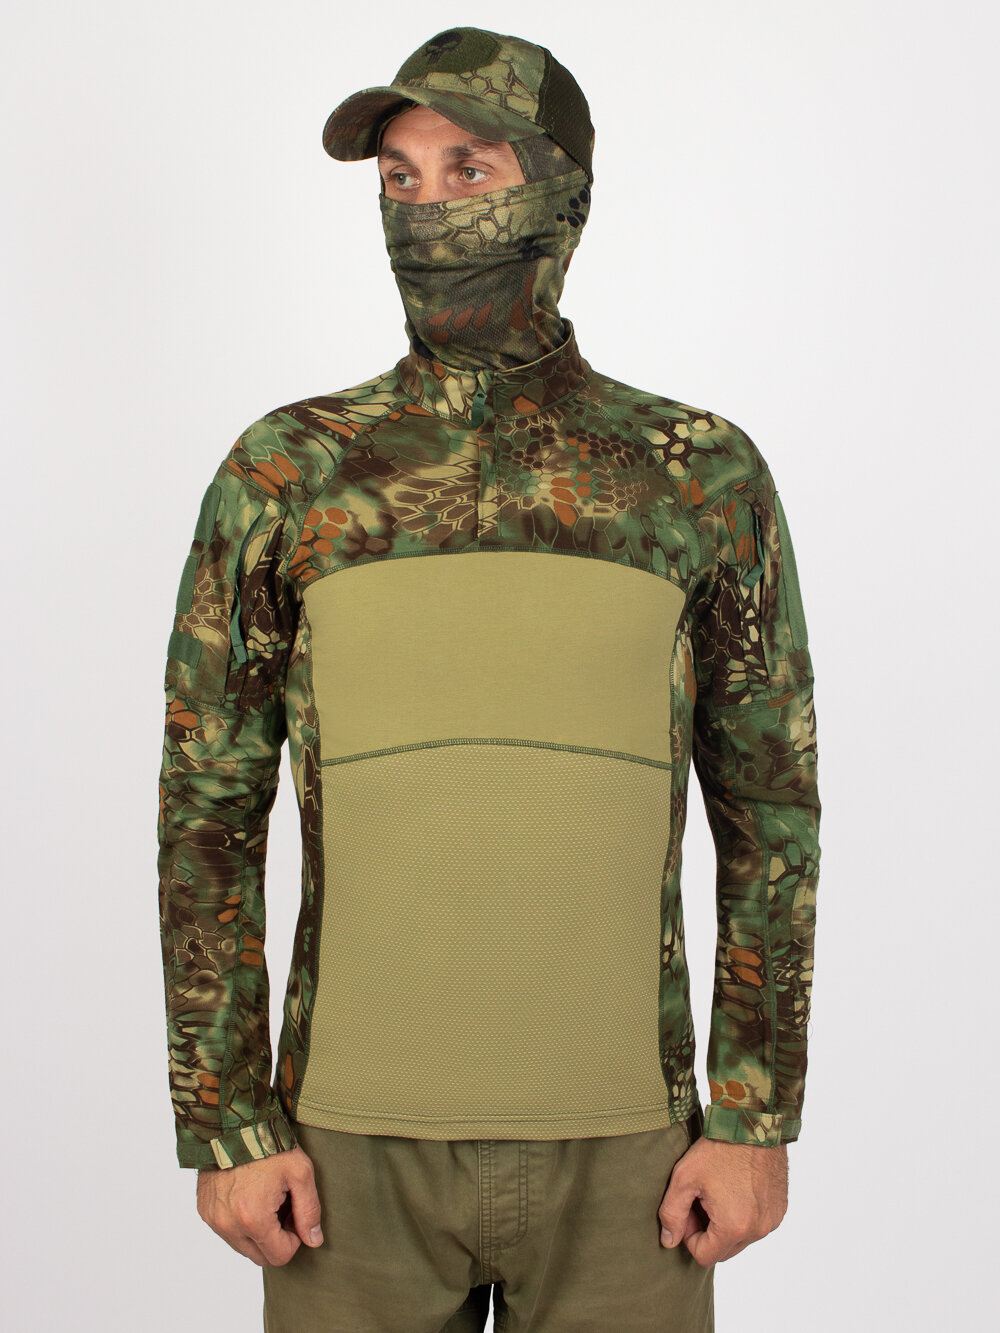 Рубашка тактическая Kamukamu цвет камуфляж Питон / Combat Shirt Python (размер: 44, рост: 170-176, размер производителя: s)